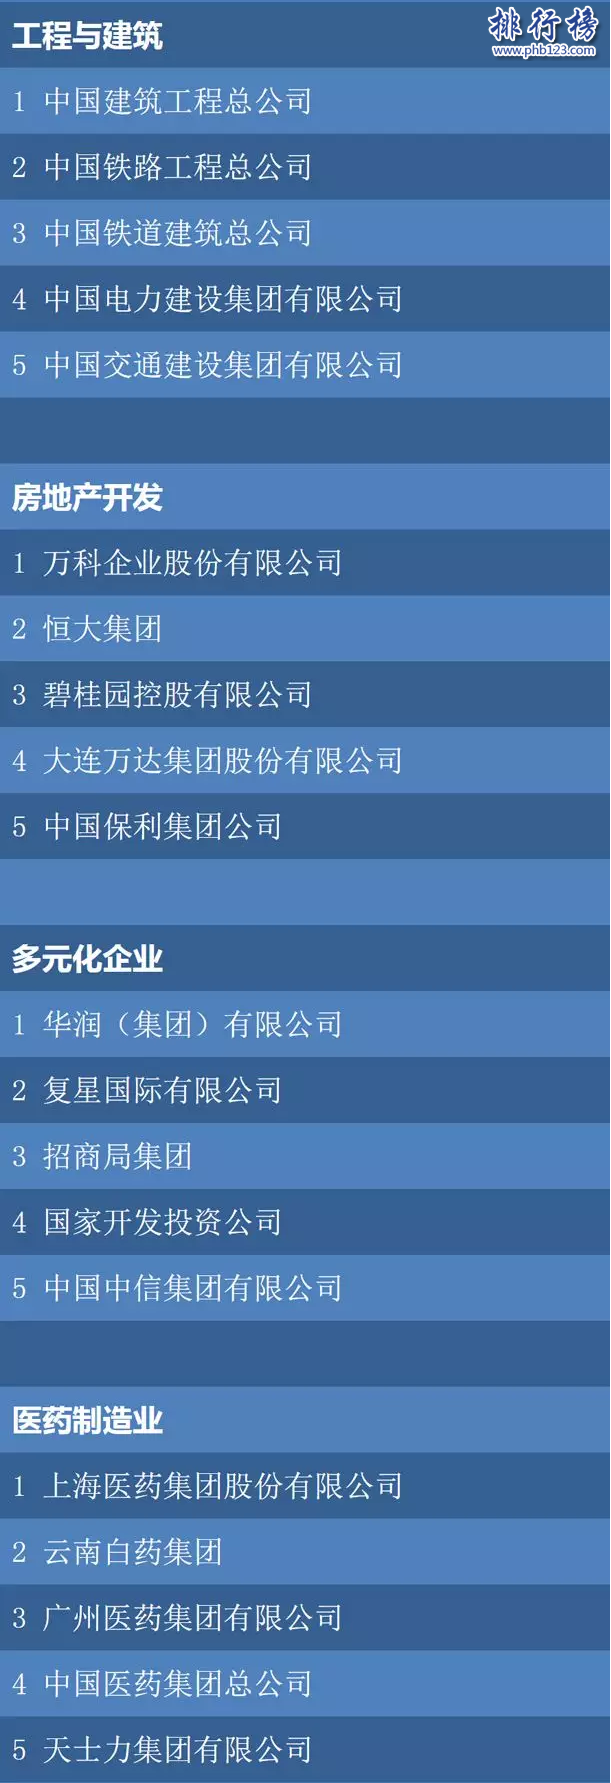 財富2018最中國具影響力僱主排名:華為阿里前二,騰訊第十